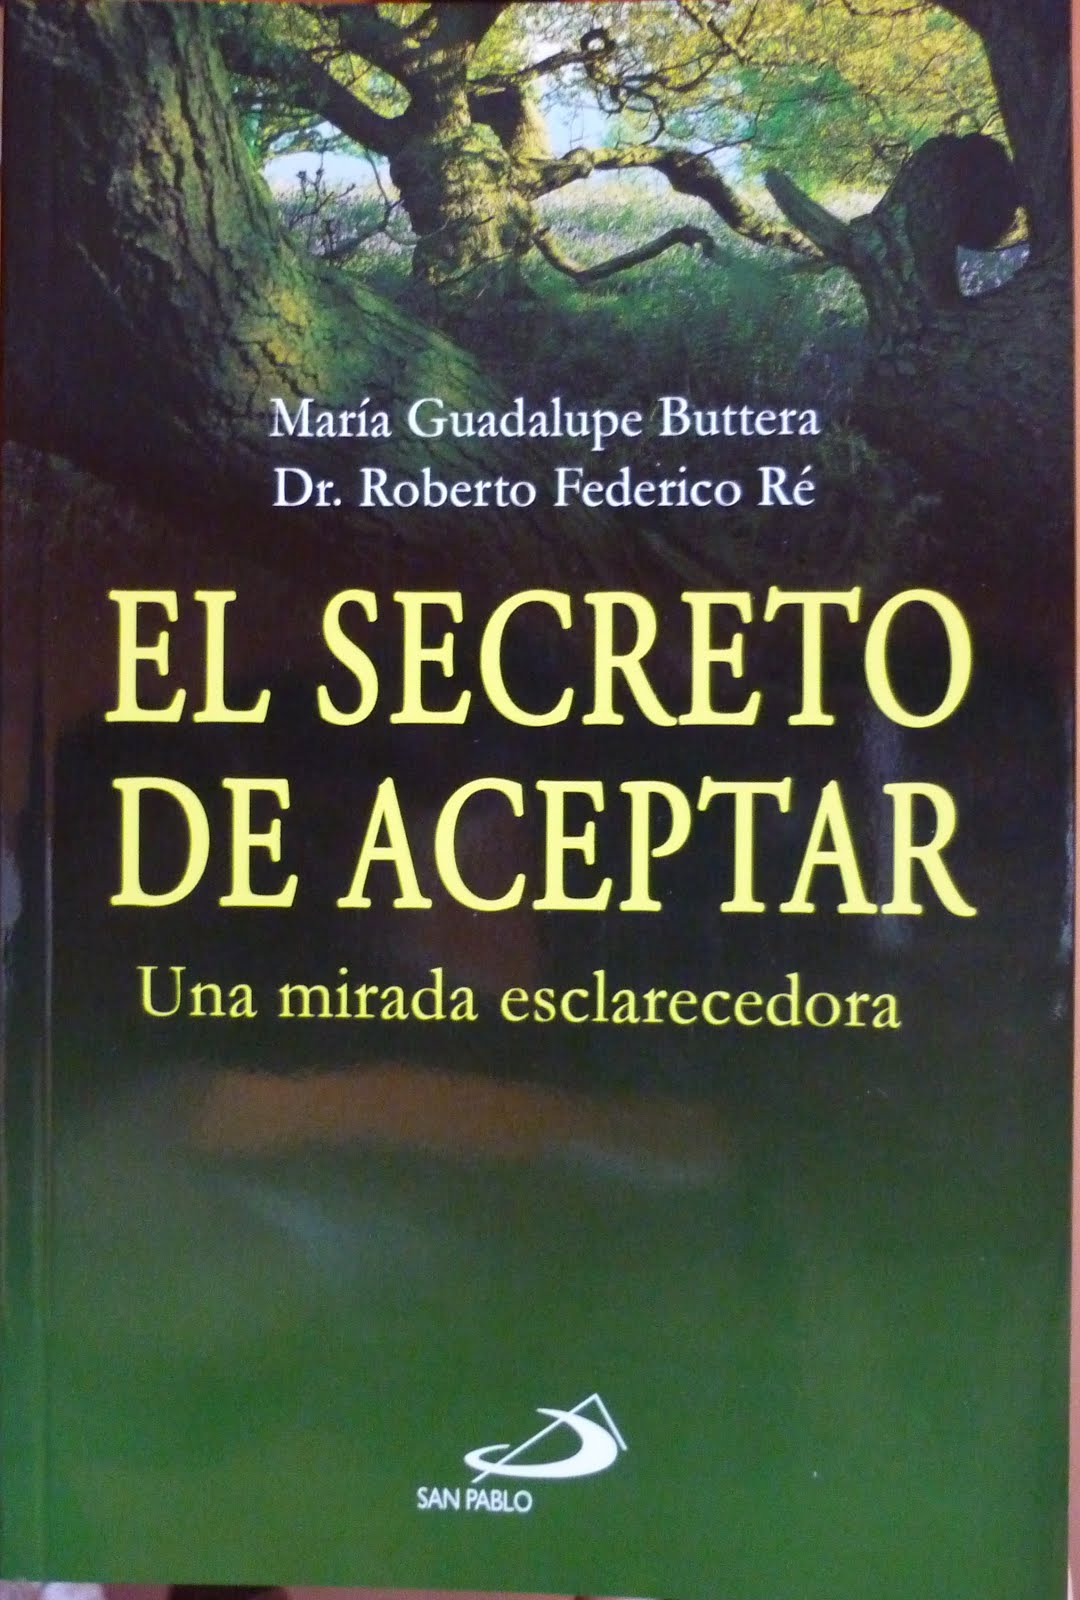 Libro "El Secreto de Aceptar"